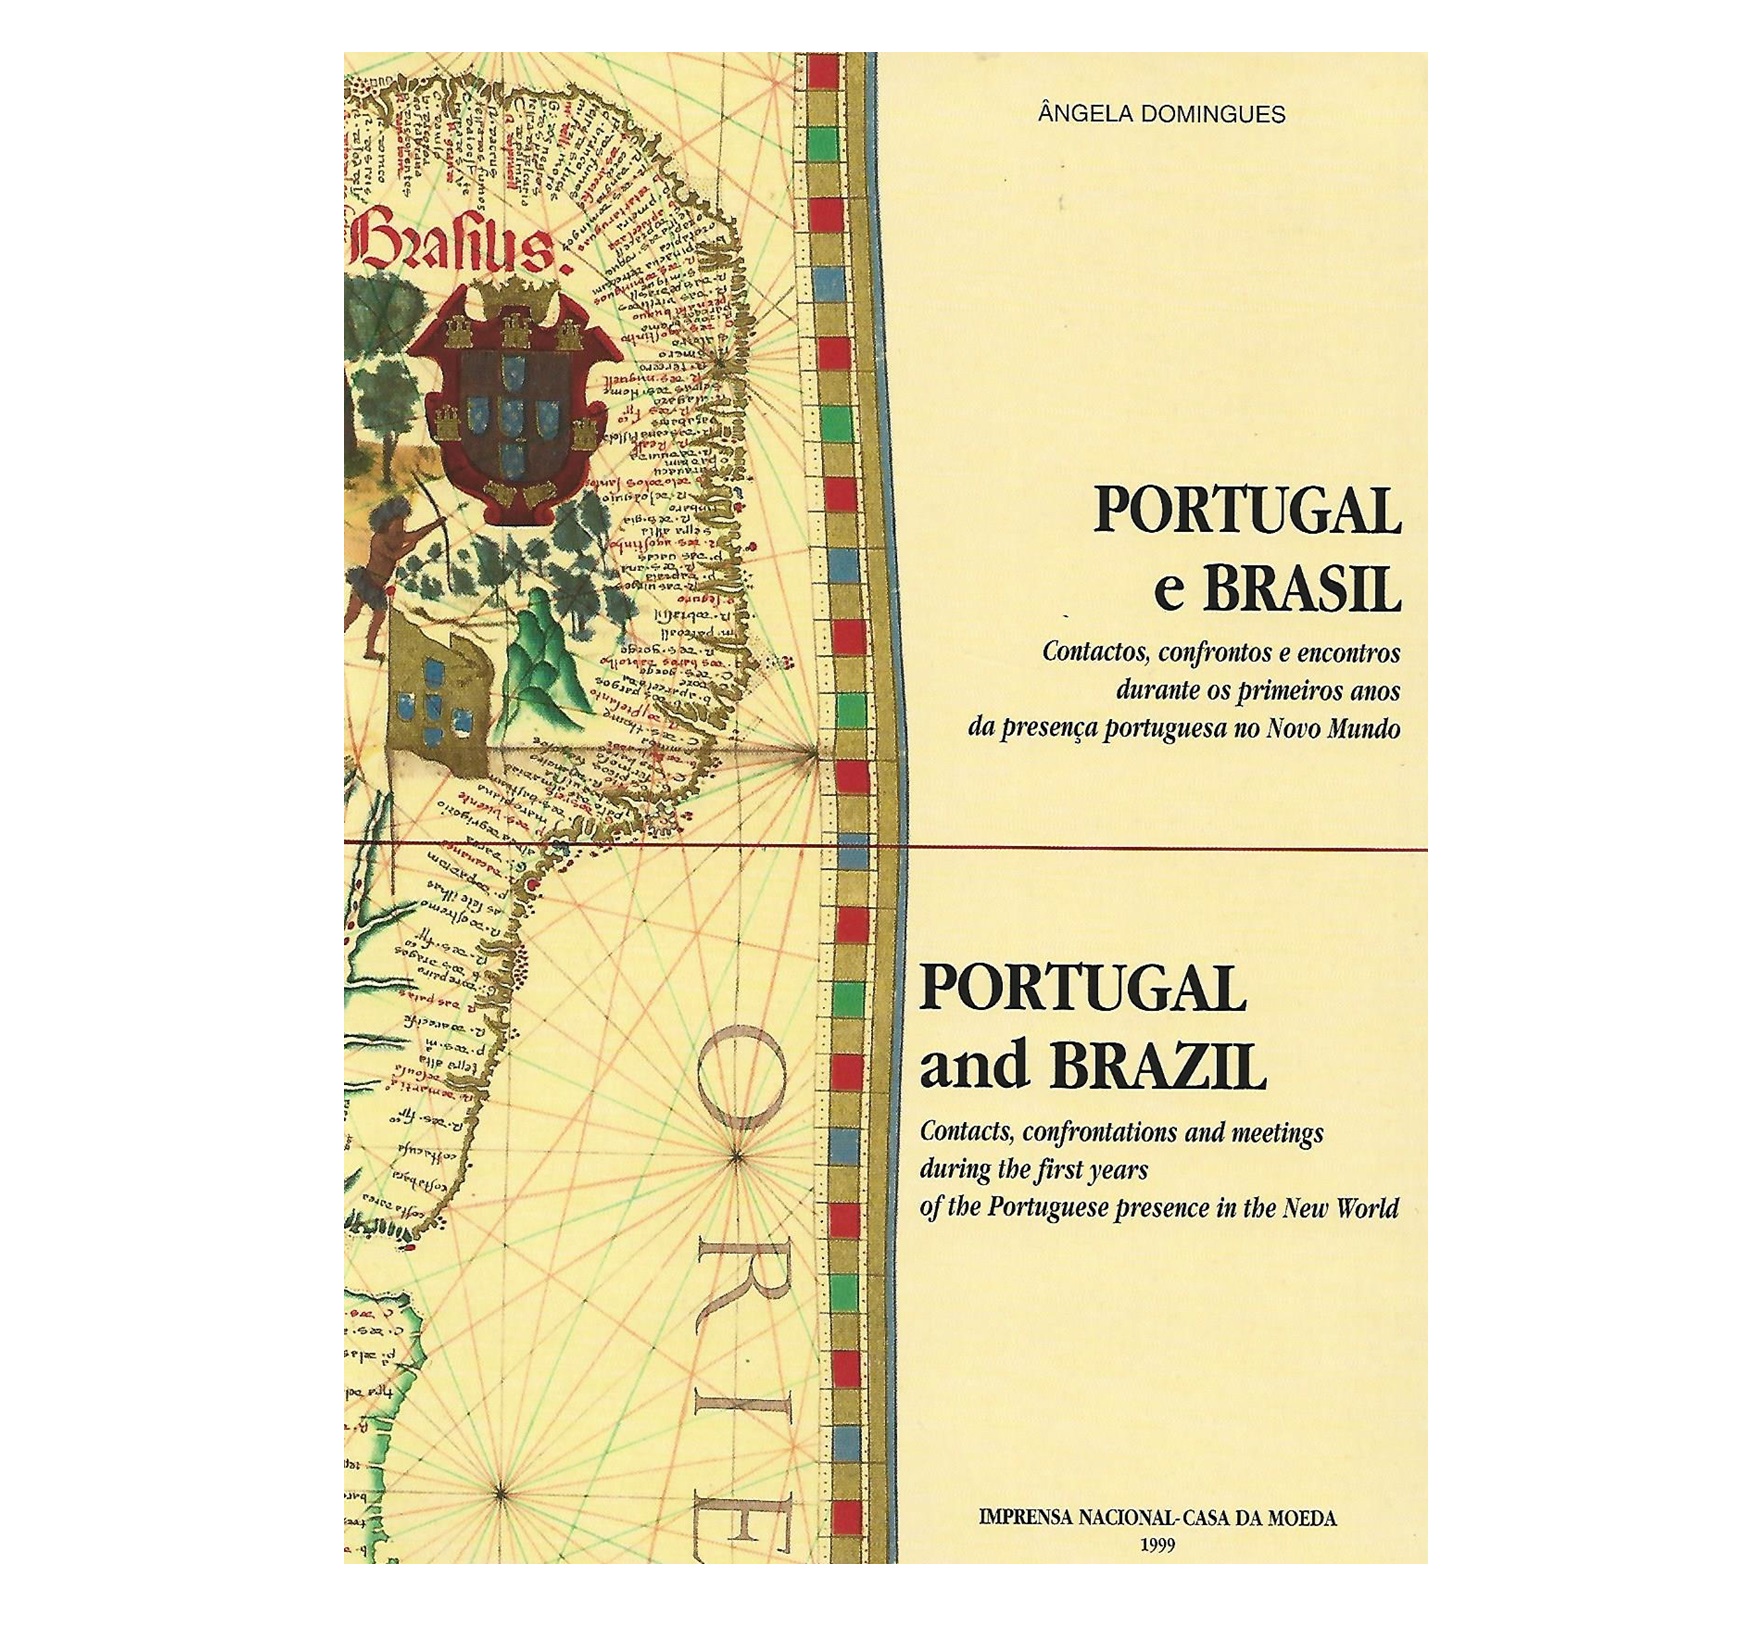  PORTUGAL E BRASIL: CONTACTOS, CONFRONTOS E ENCONTROS DURANTE OS PRIMEIROS ANOS DA PRESENÇA PORTGUGUESA NO NOVO MUNDO